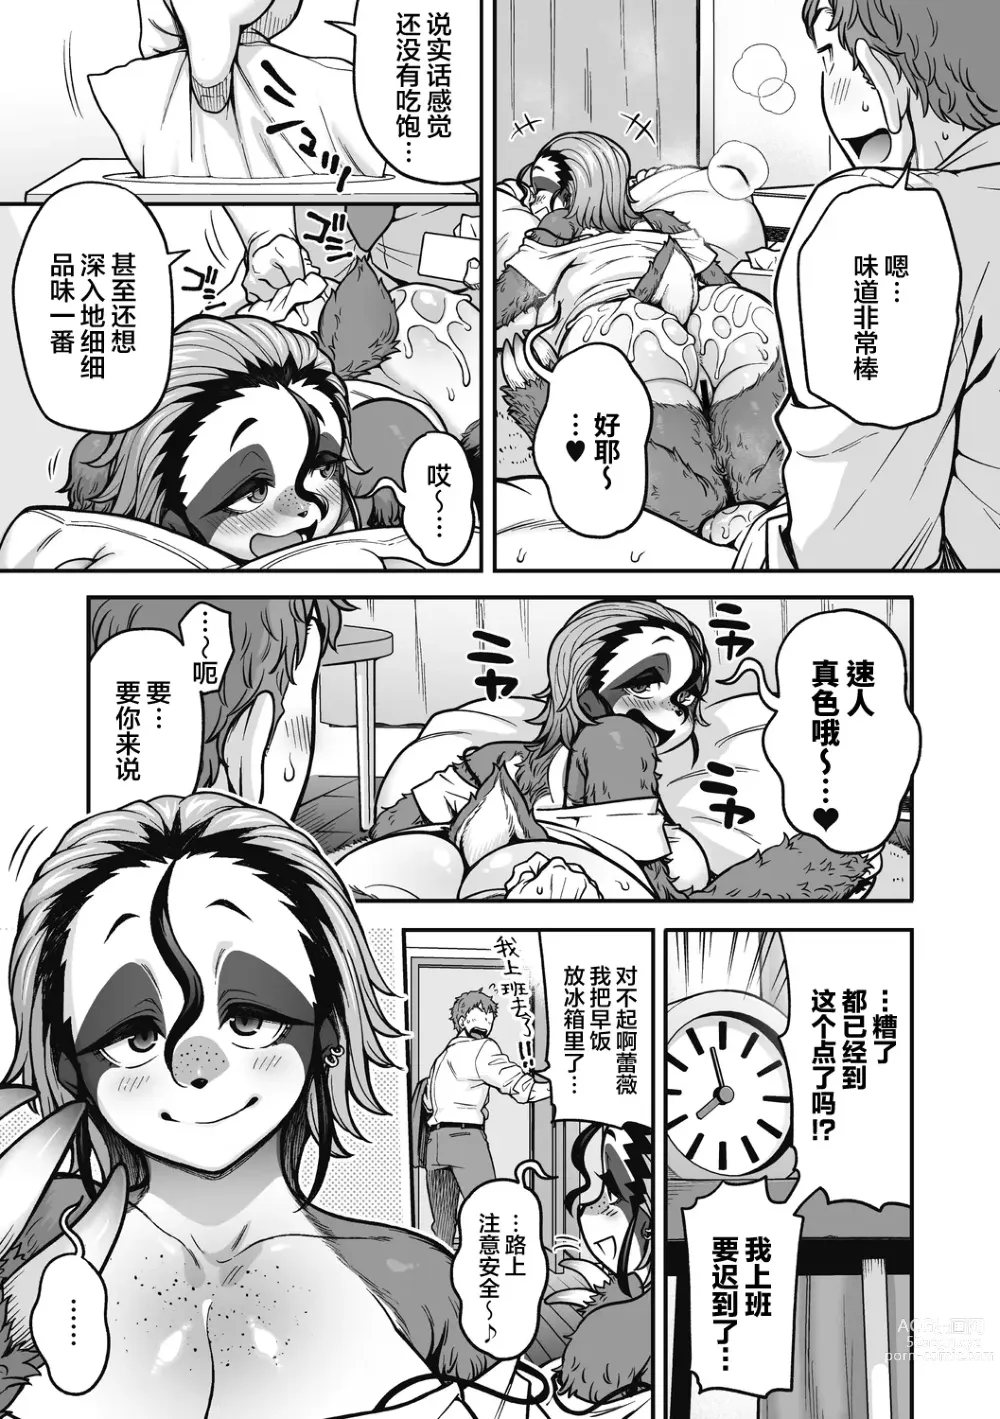 Page 10 of manga Namakete Torokete Tsunagatte